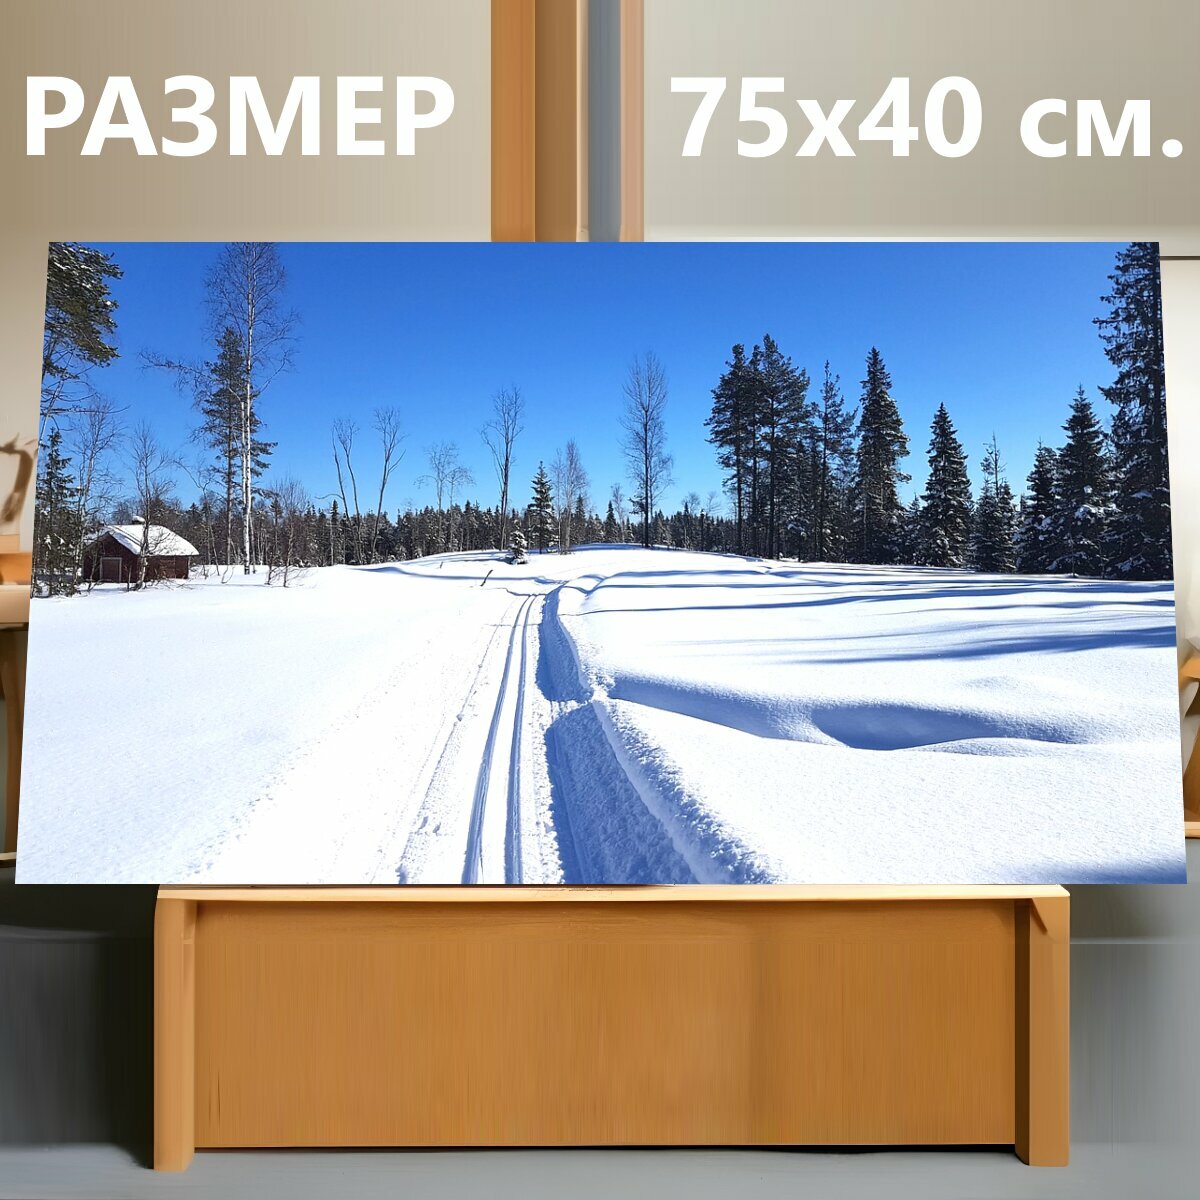 Картина на холсте "Лыжные гонки, снег, зима" на подрамнике 75х40 см. для интерьера